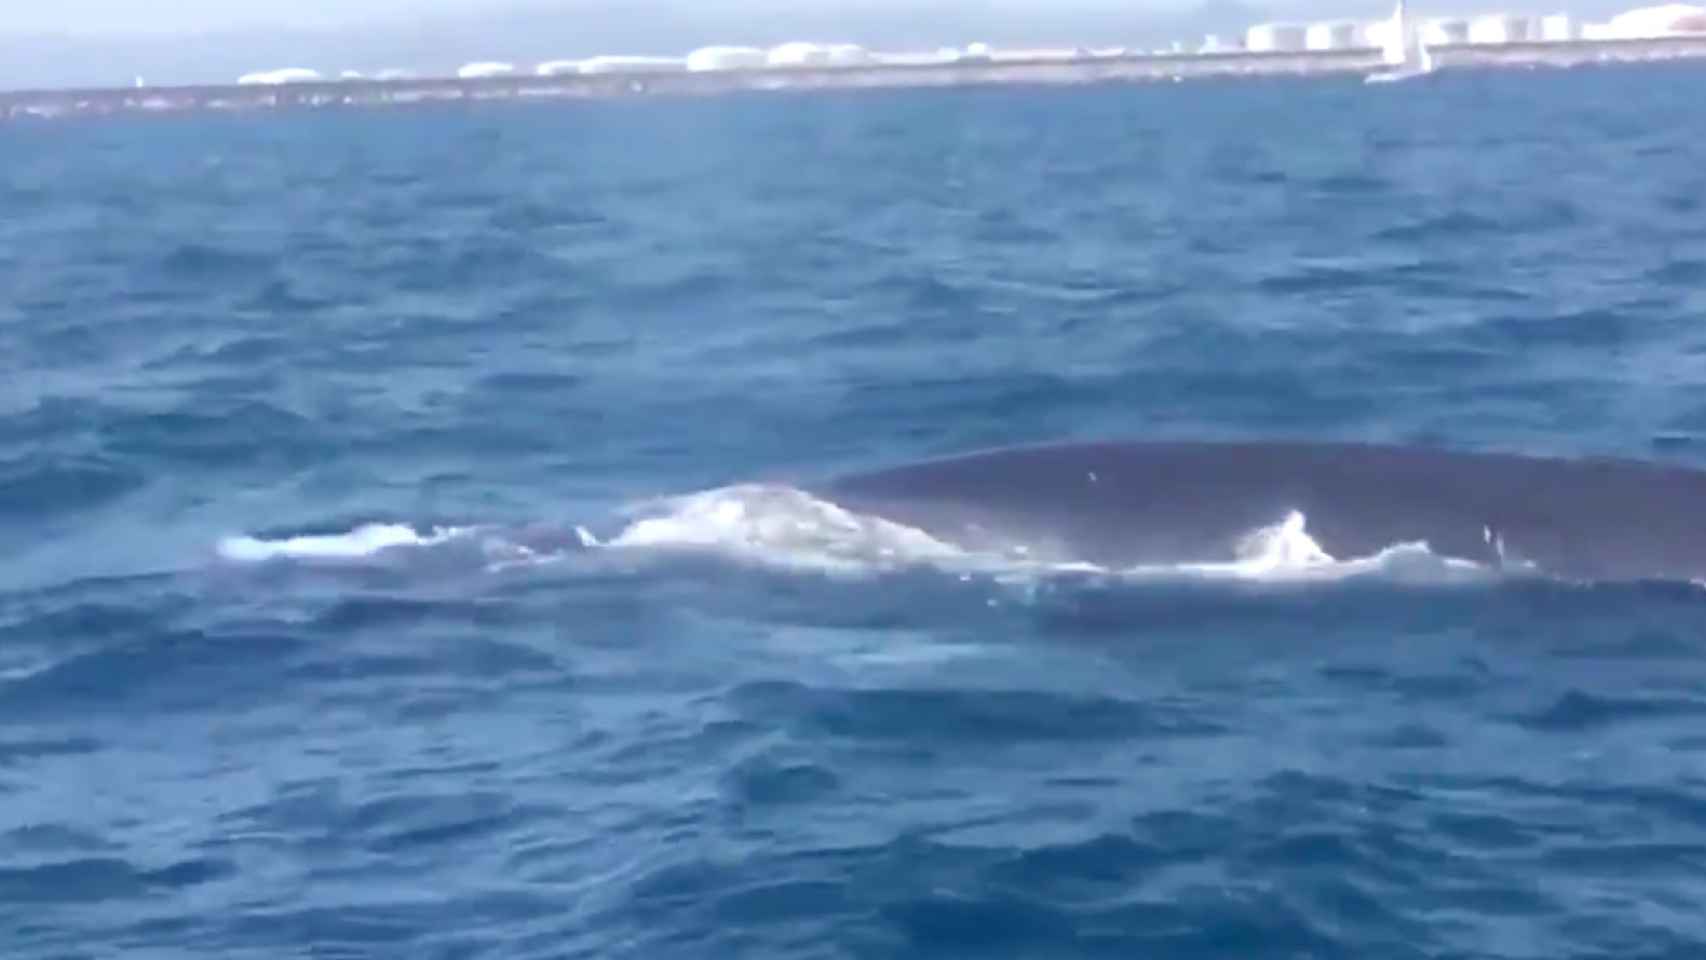 Una de las ballenas que ha detenido el tráfico marítimo este viernes en el Port / GUARDIA URBANA BCN